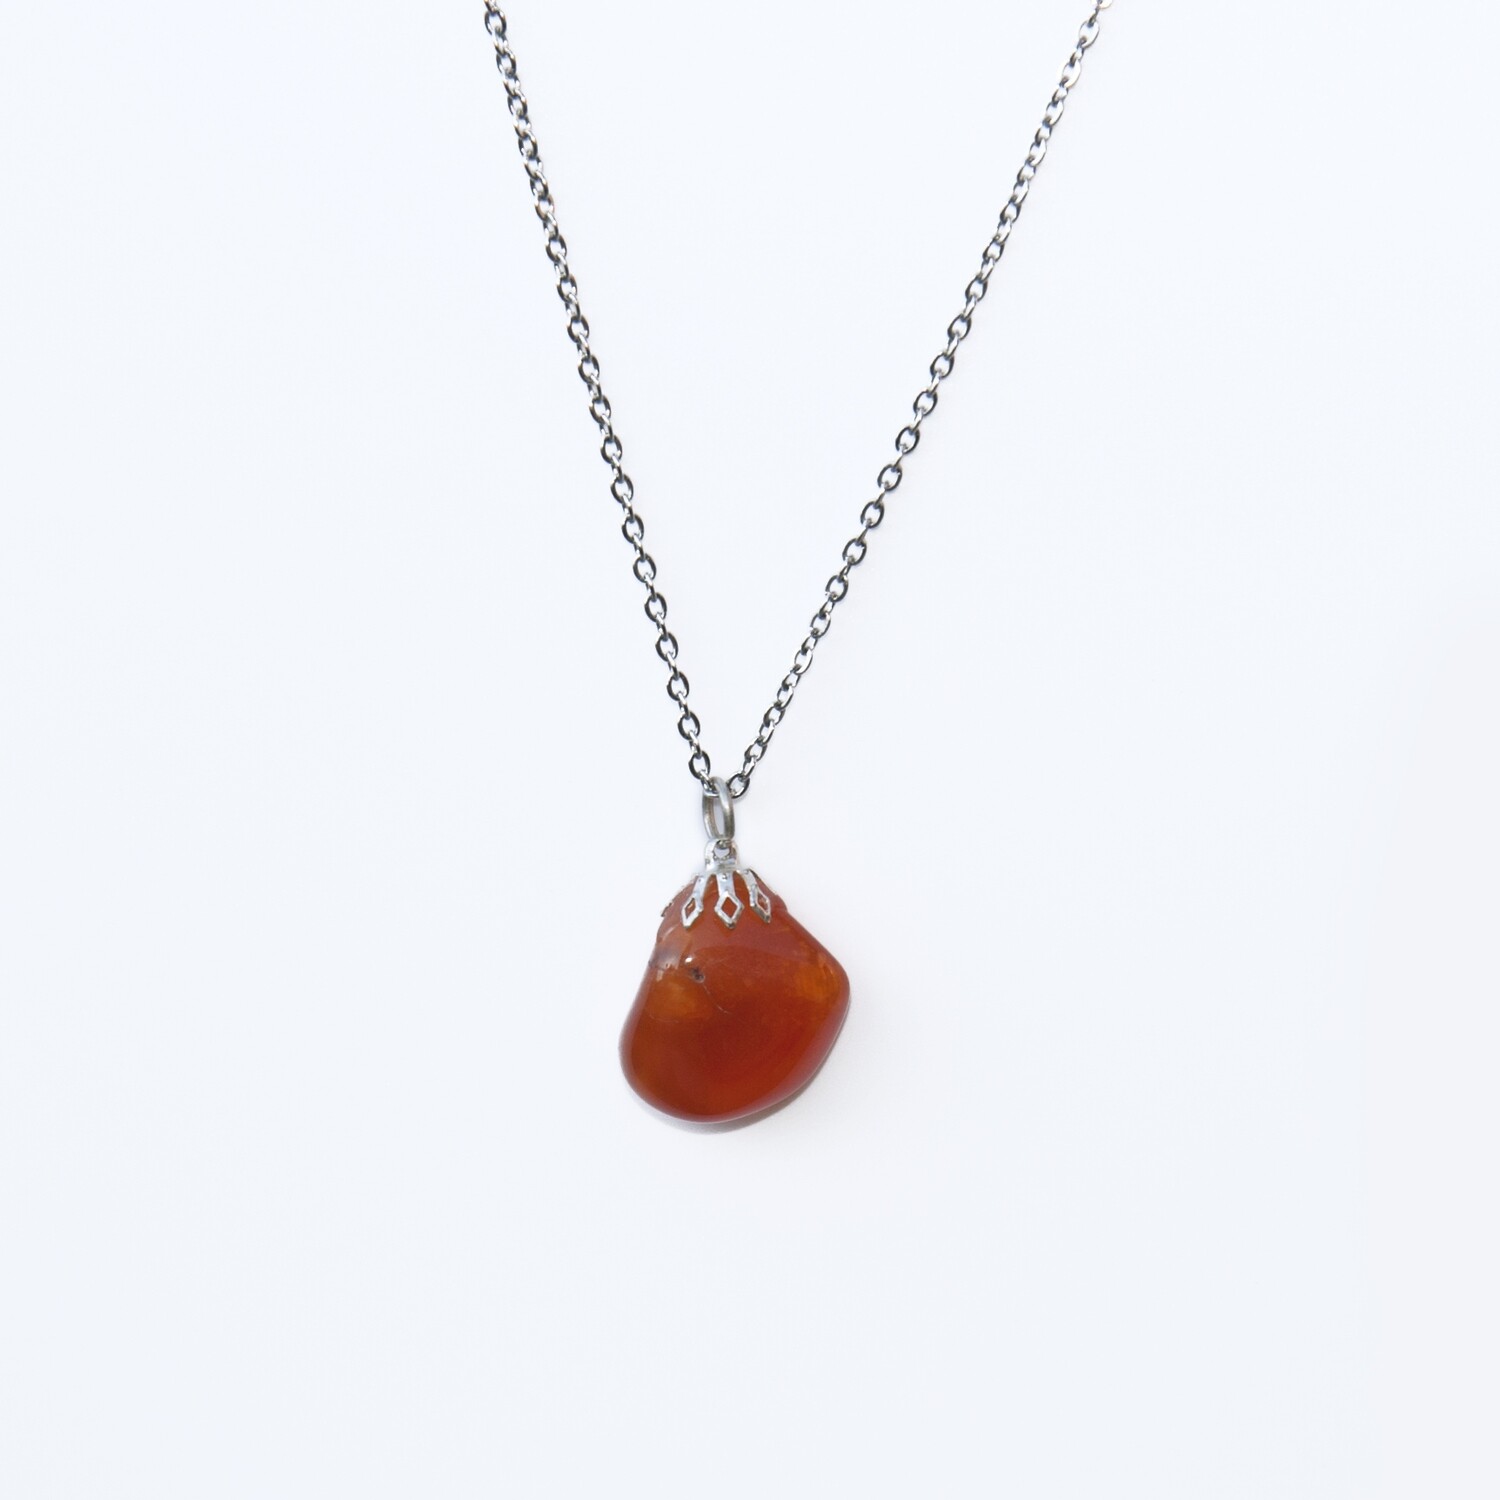 Carnelian pendant gemstone necklace